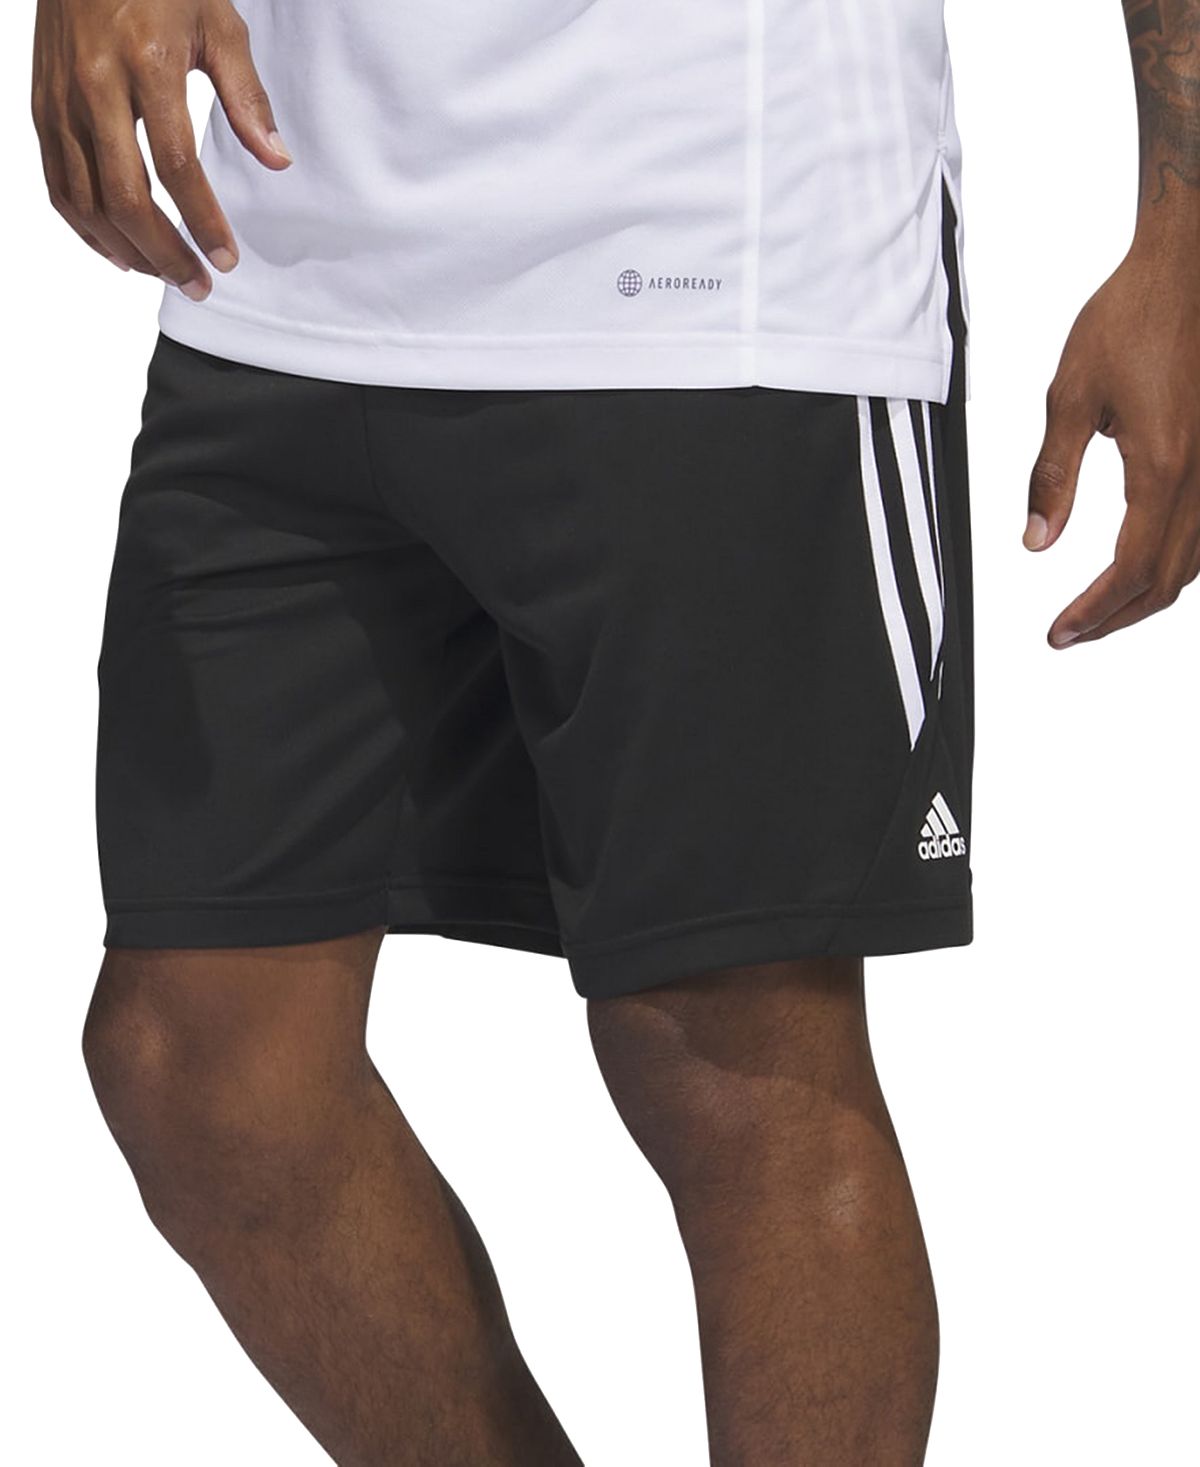 Мужские баскетбольные шорты Legends с 3 полосками 11 дюймов adidas